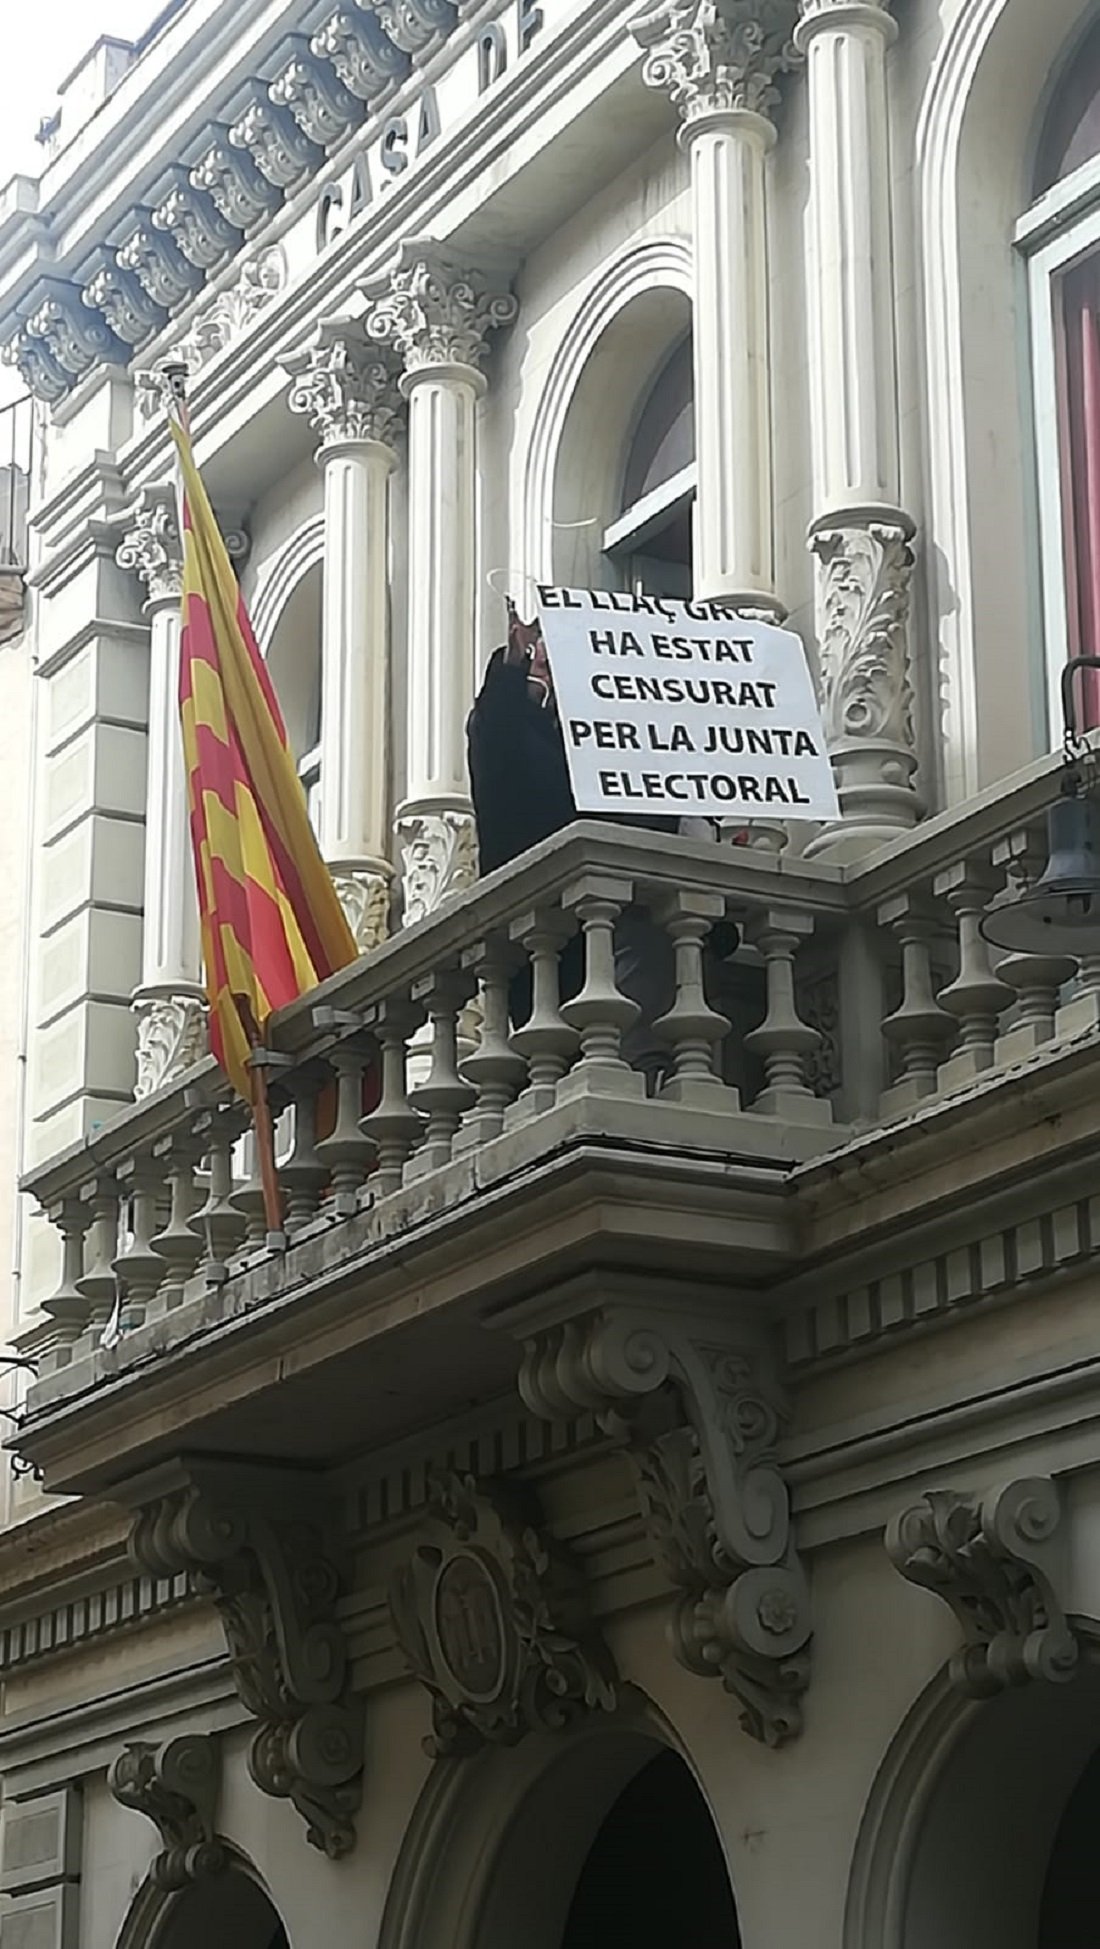 Els Mossos treuen la pancarta de Capellades amb el lema: 'El llaç groc ha estat censurat per la JEC'